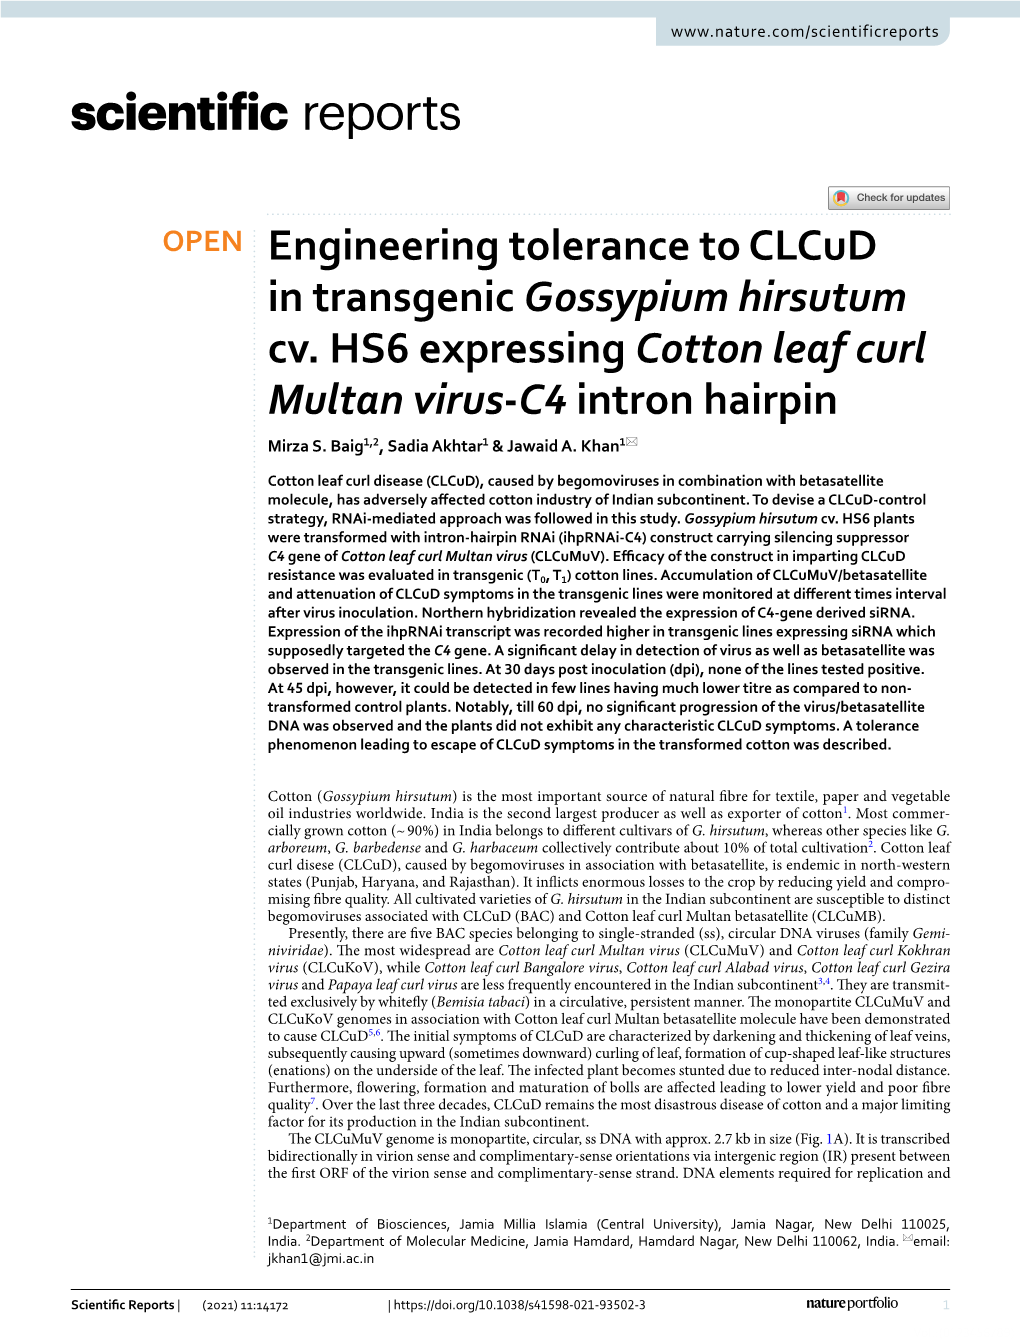 Engineering Tolerance to Clcud in Transgenic Gossypium Hirsutum Cv